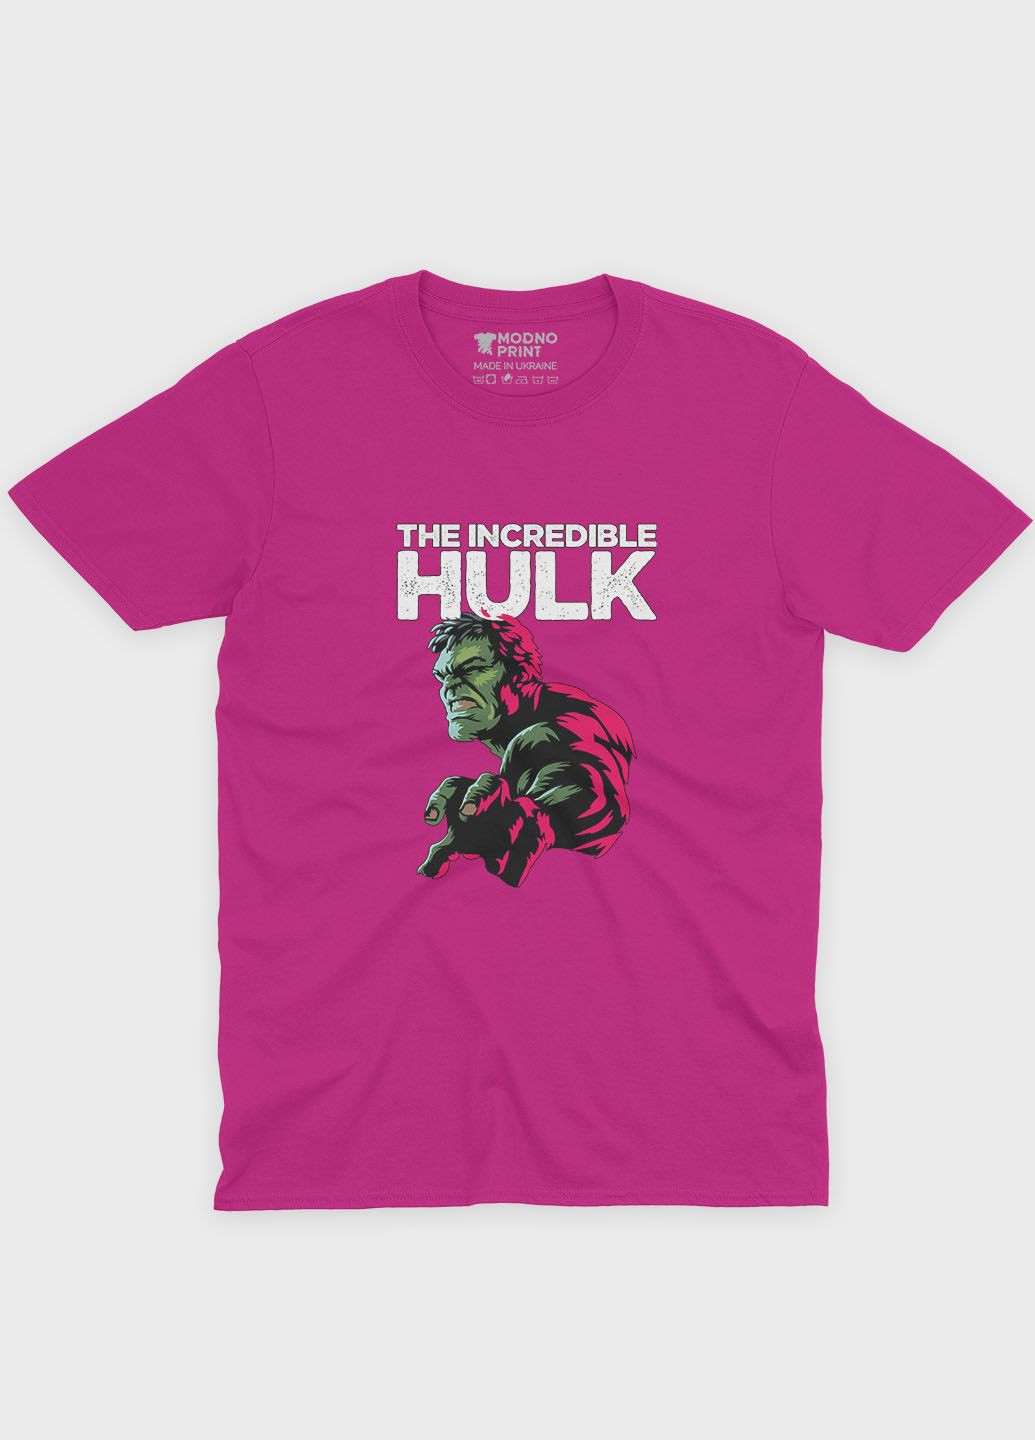 Розовая демисезонная футболка для мальчика с принтом супергероя - халк (ts001-1-fuxj-006-018-007-b) Modno